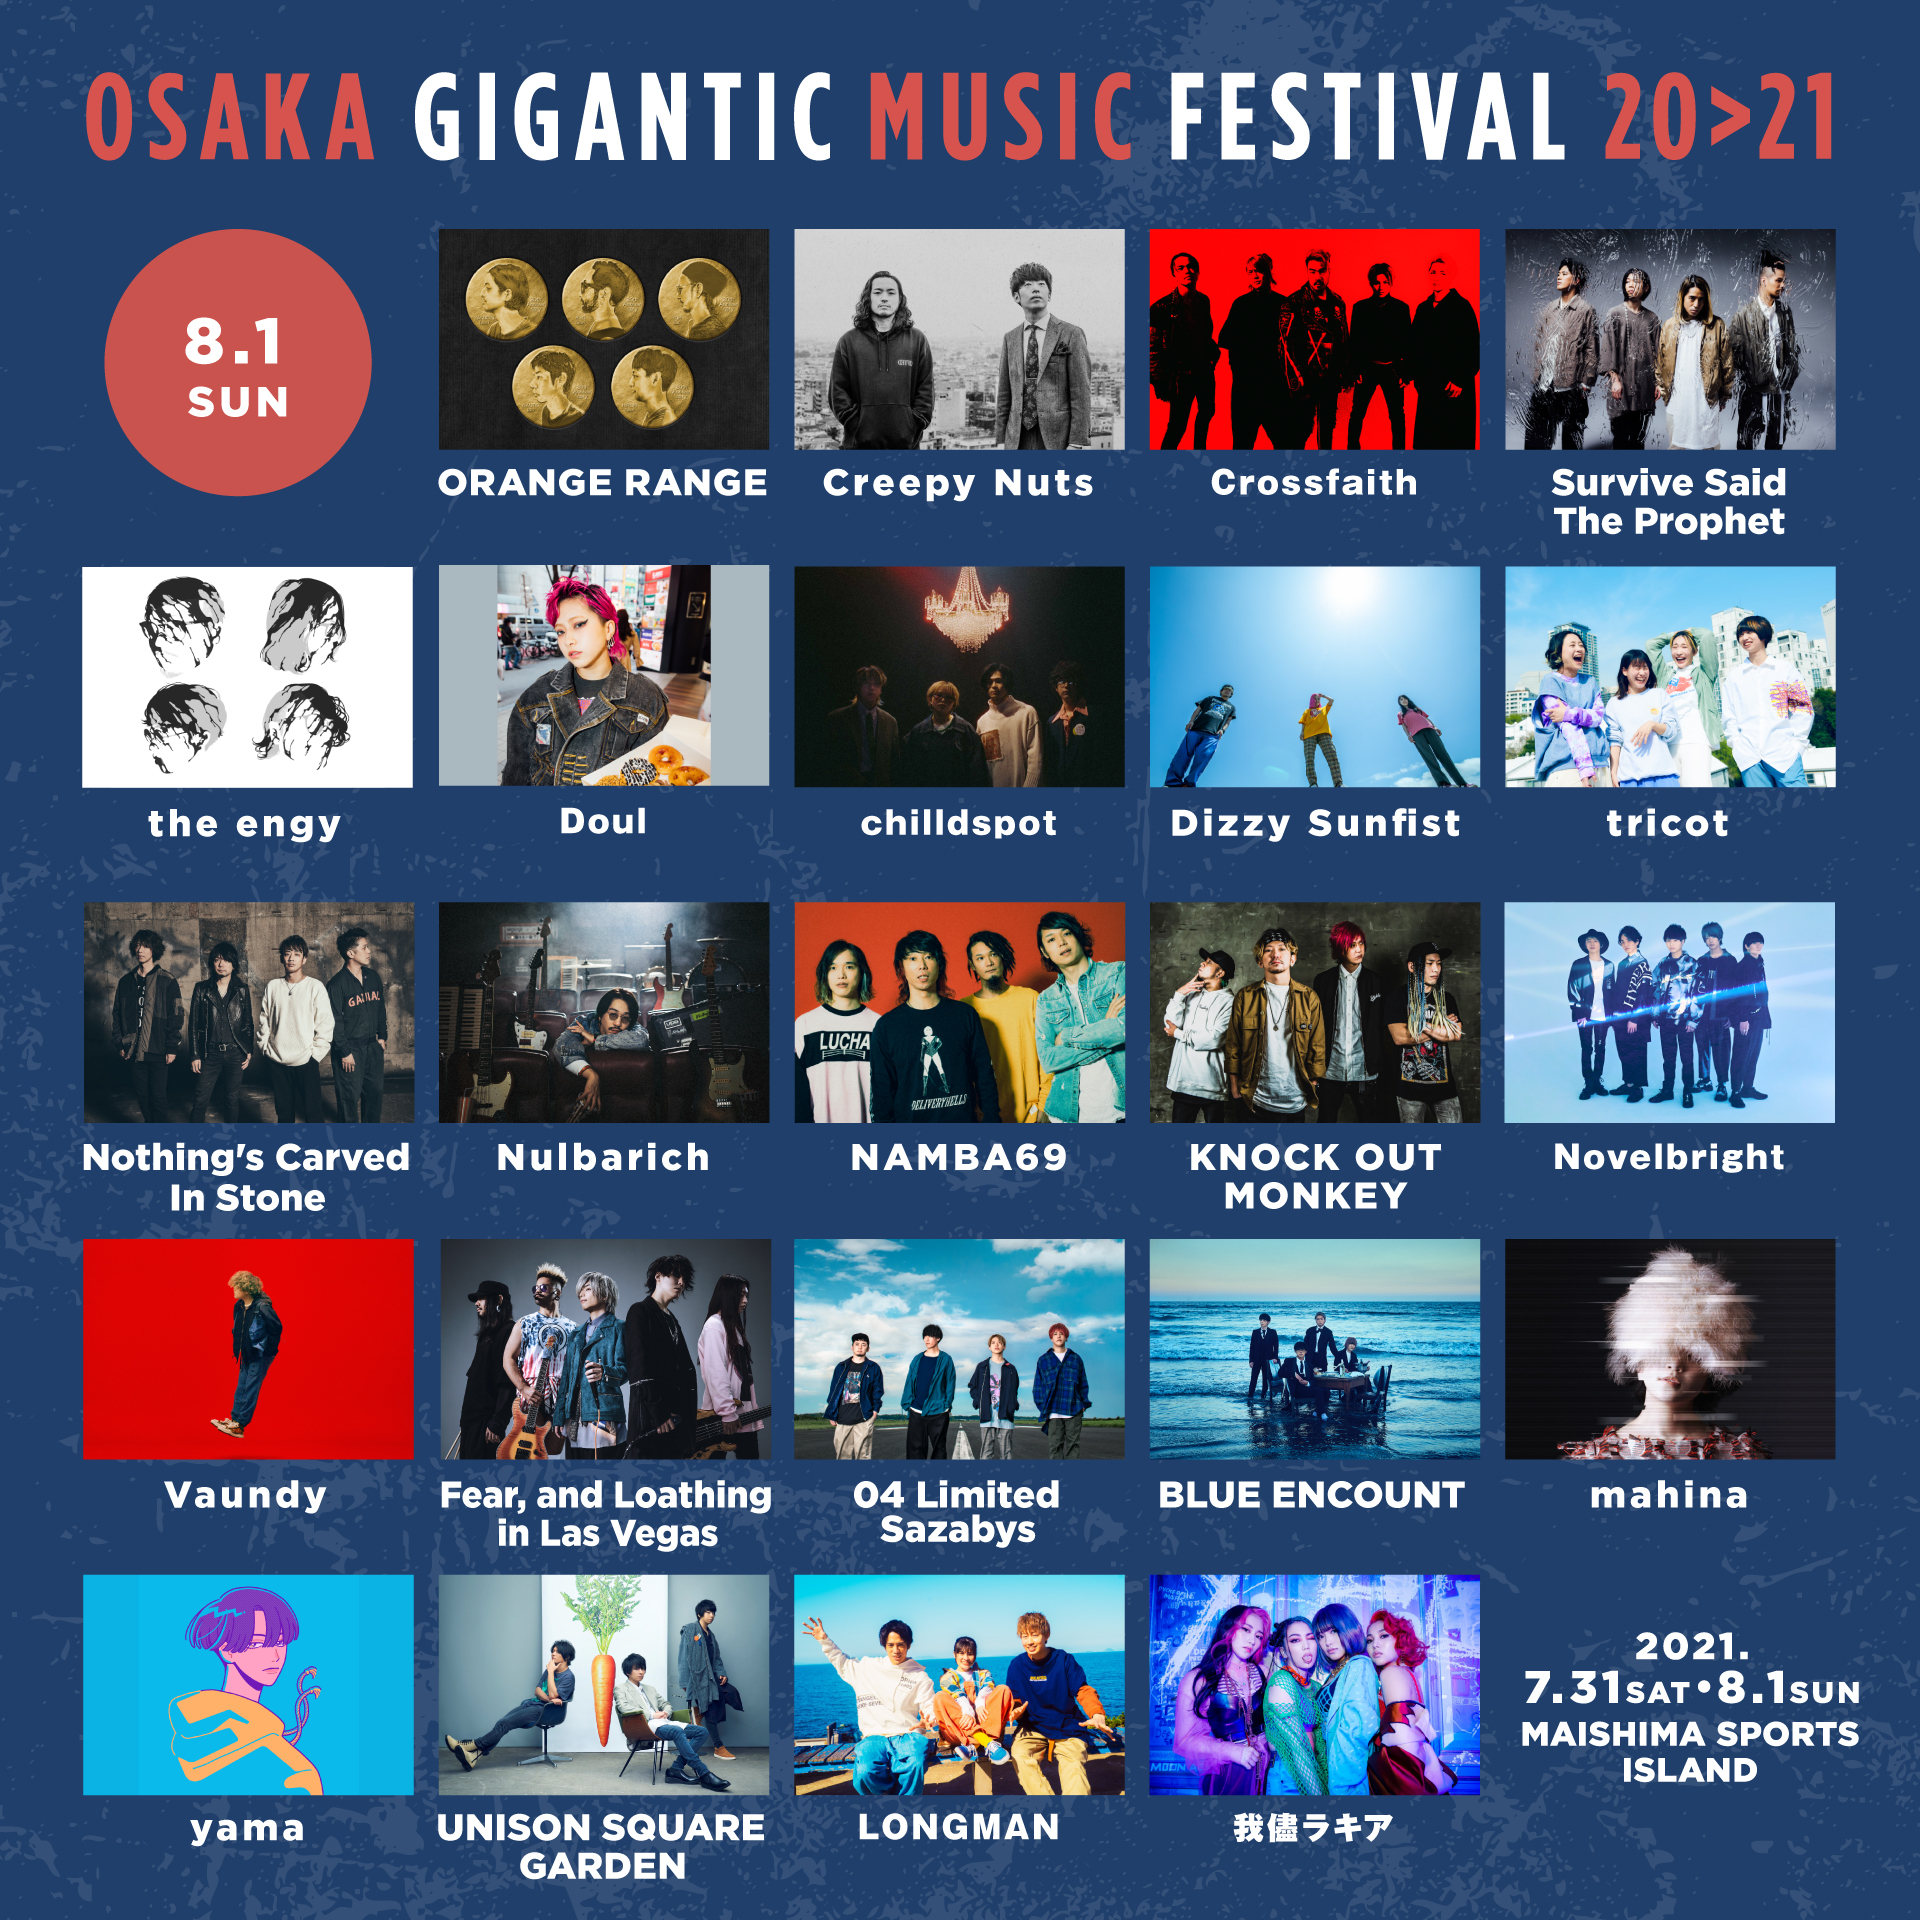 『OSAKA GIGANTIC MUSIC FESTIVAL 20>21』